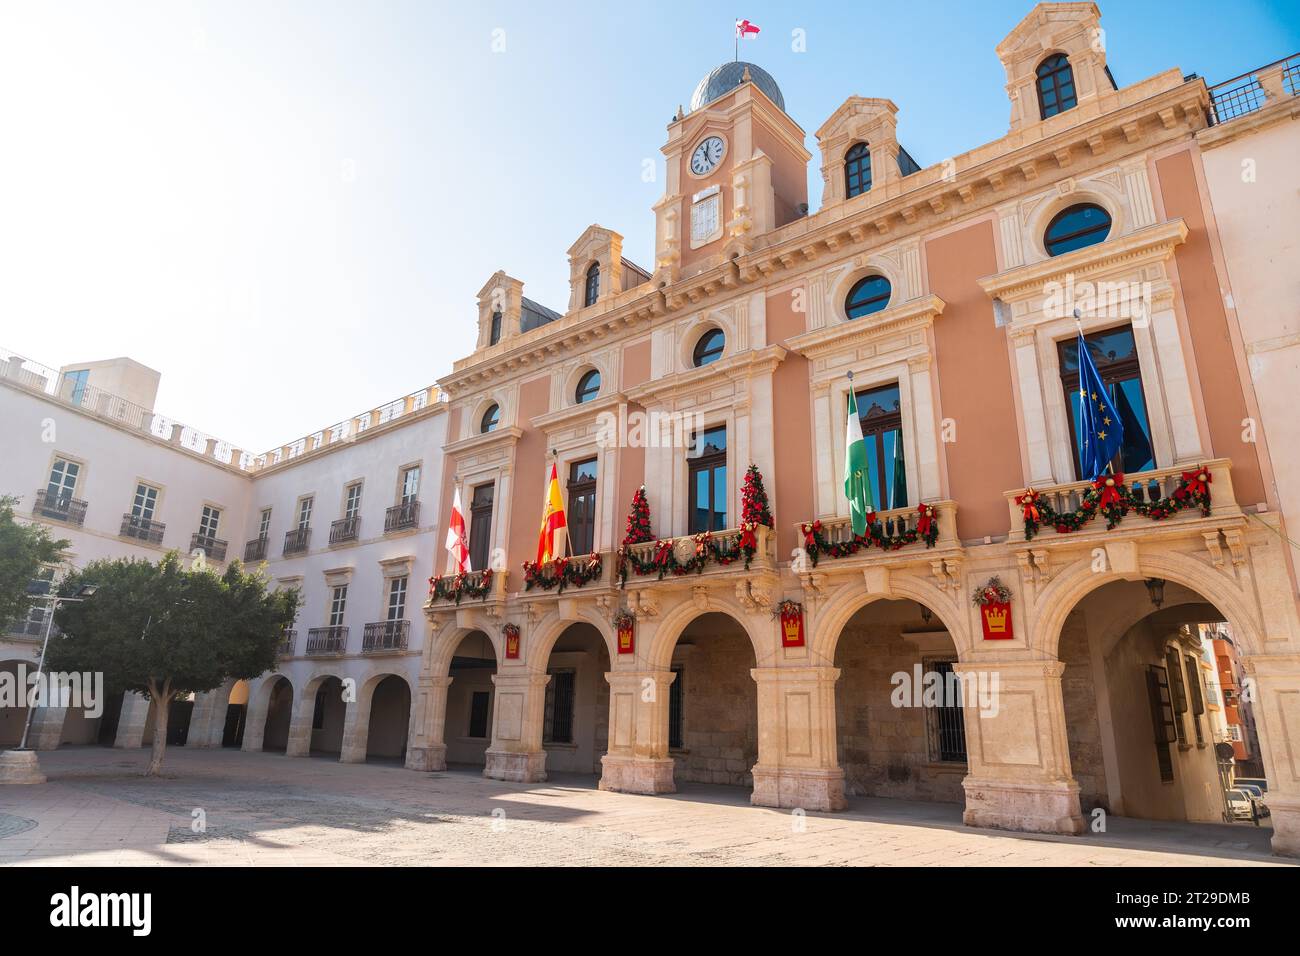 Town Hall Square in the city of Almeria, Andalusia. Spain. Costa del sol in the mediterranean sea Stock Photo